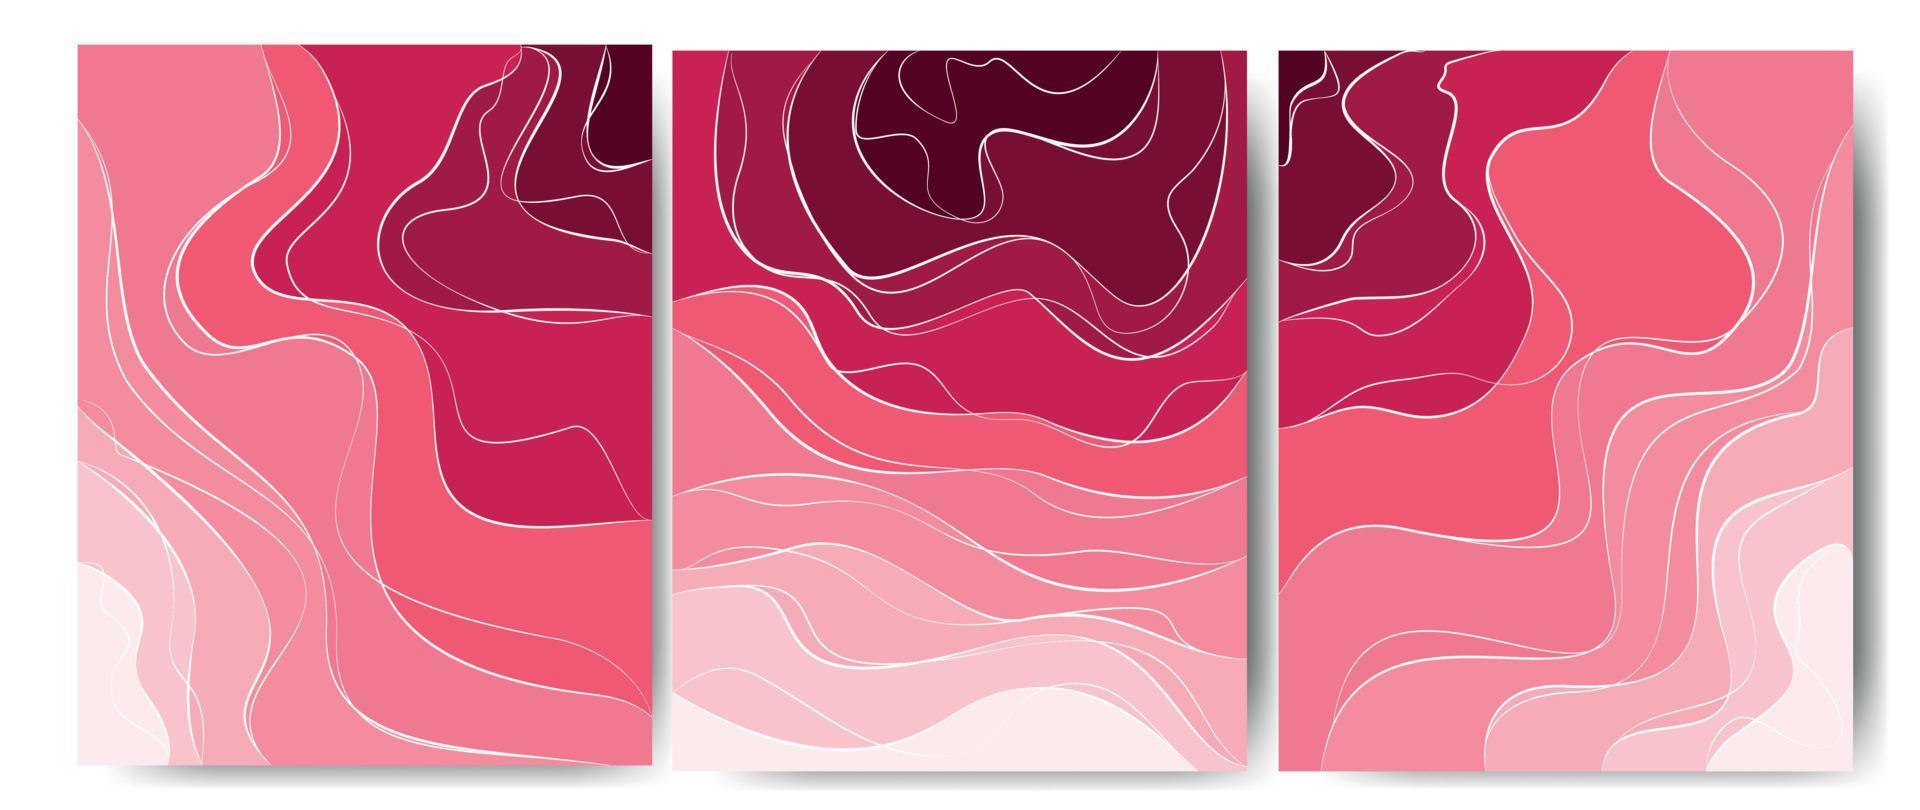 sfondo elegante con elementi bianchi a linea d'onda su tonalità rosa. Taglio carta 3D. illustrazione vettoriale per il design. una rosa incredibile.